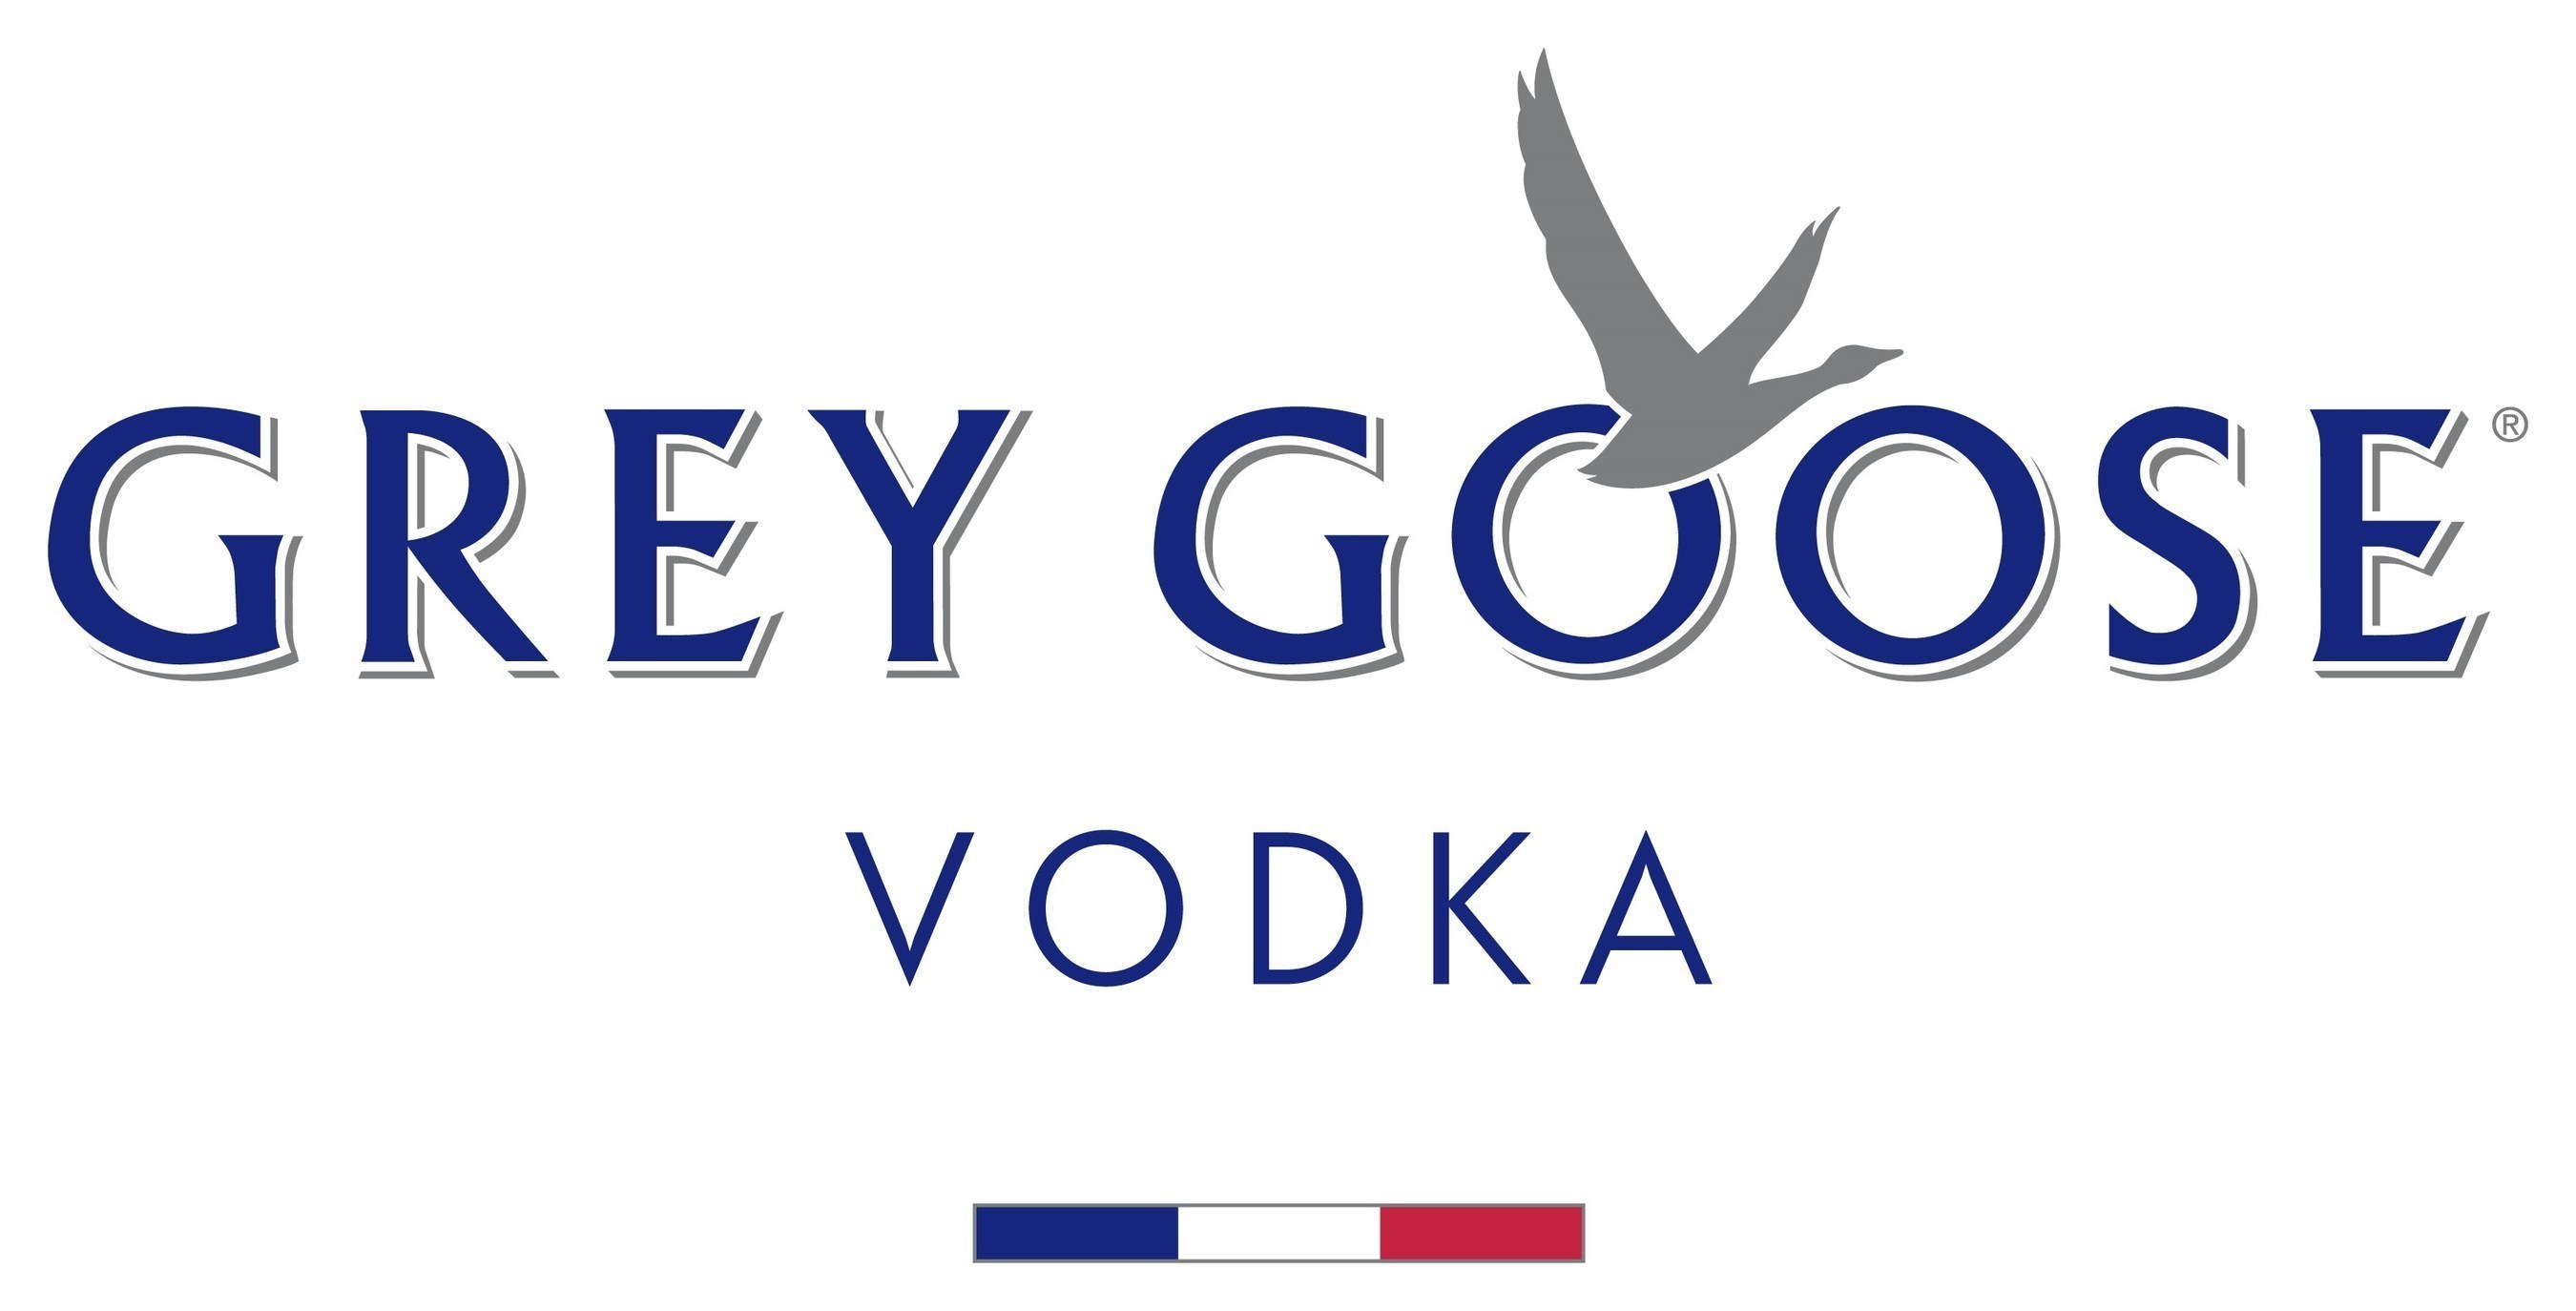 GREY GOOSE Vodka